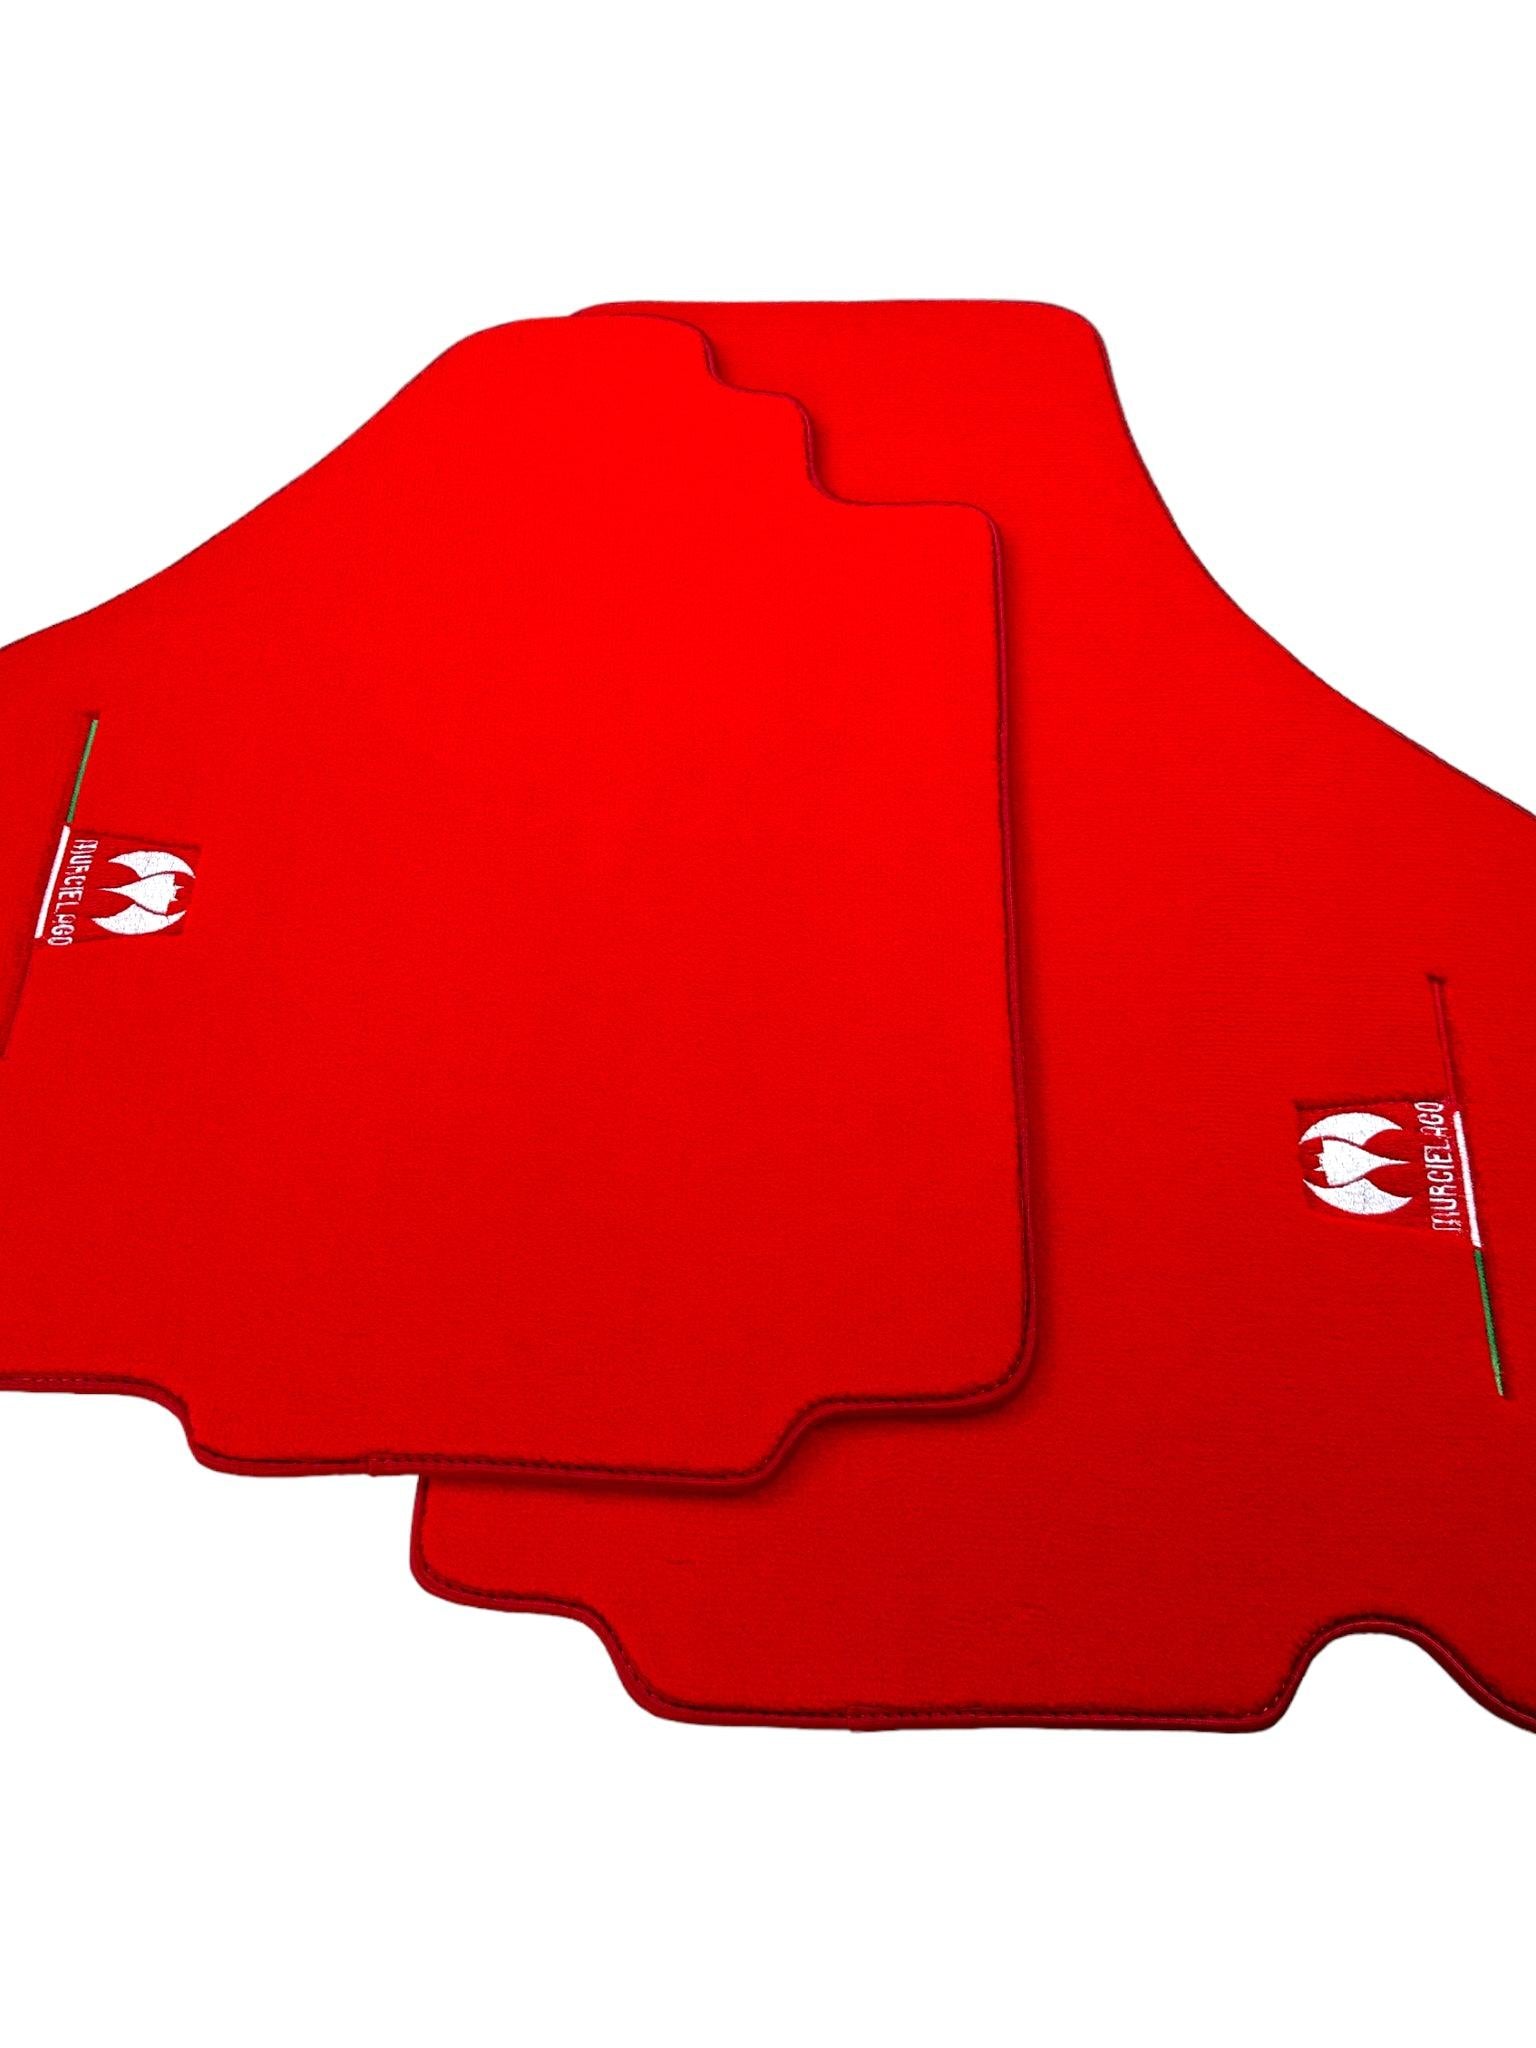 Red Floor Mats for Lamborghini Murcielago AutoWin Brand